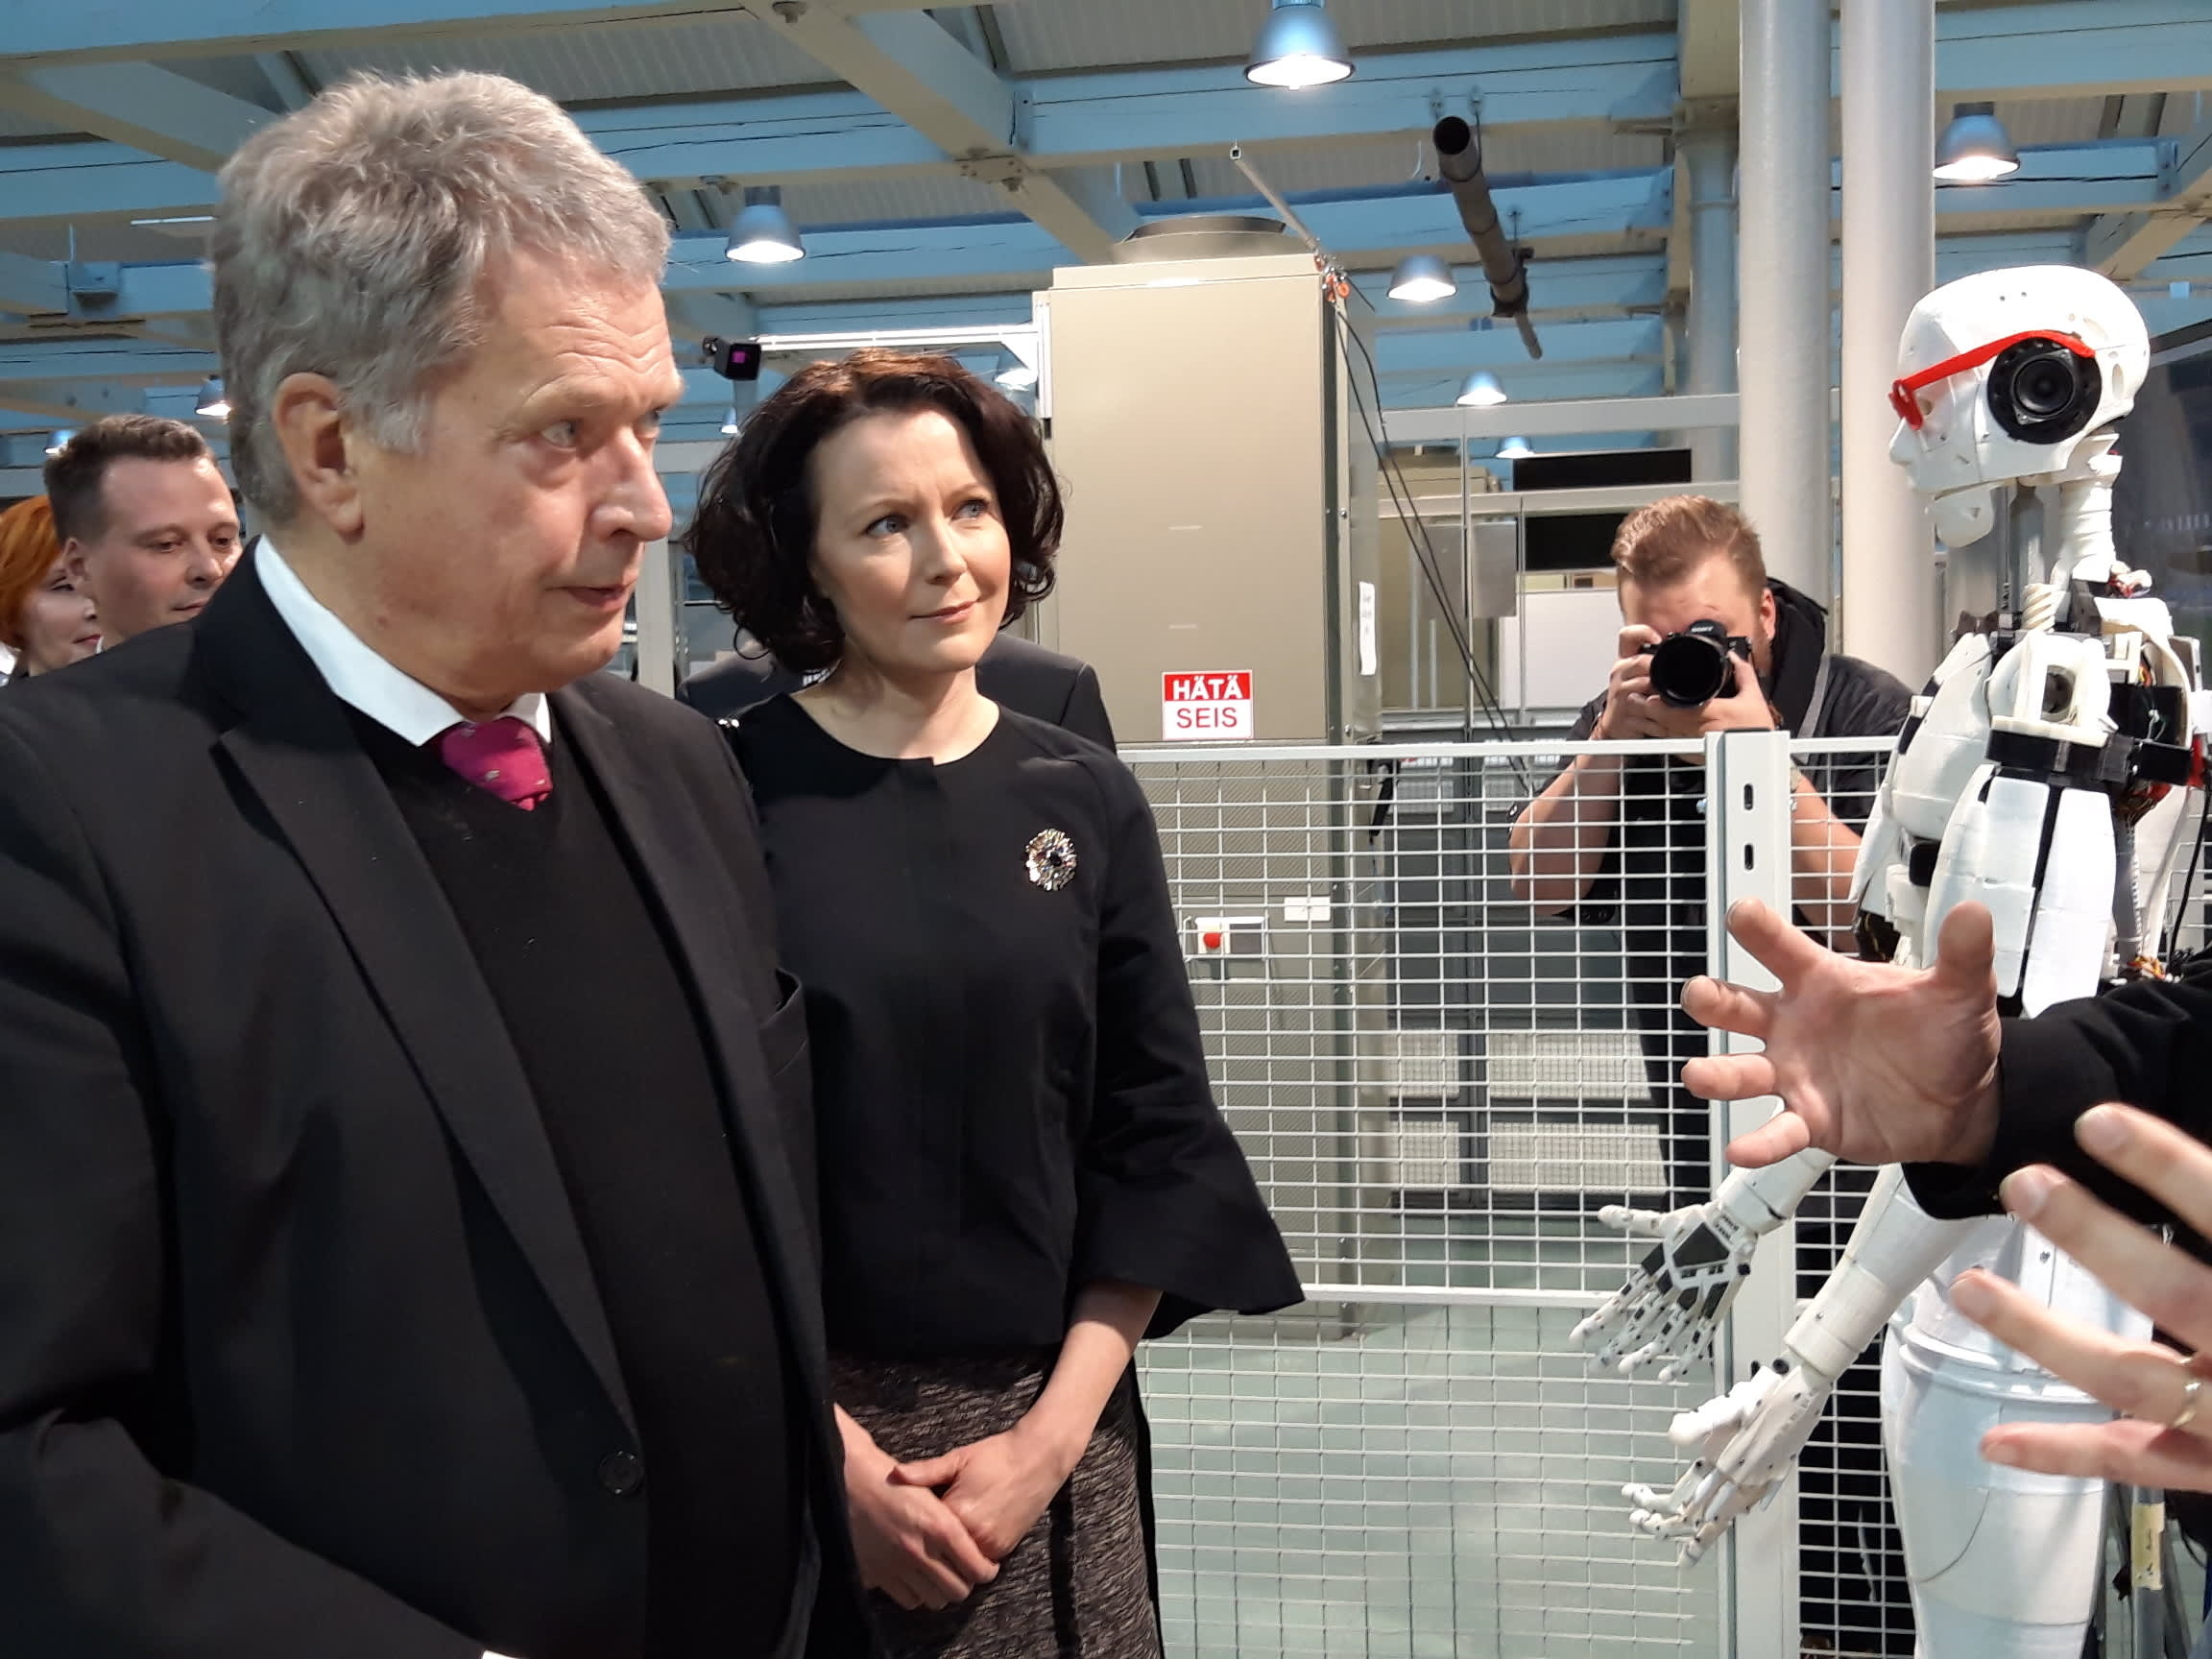 Tasavallan presidentti Sauli Niinistölle ja rouva Jenni Haukiolle esiteltiin Technobotnialla muun muassa robottiteknologiaa ja 3D-tulostamista.